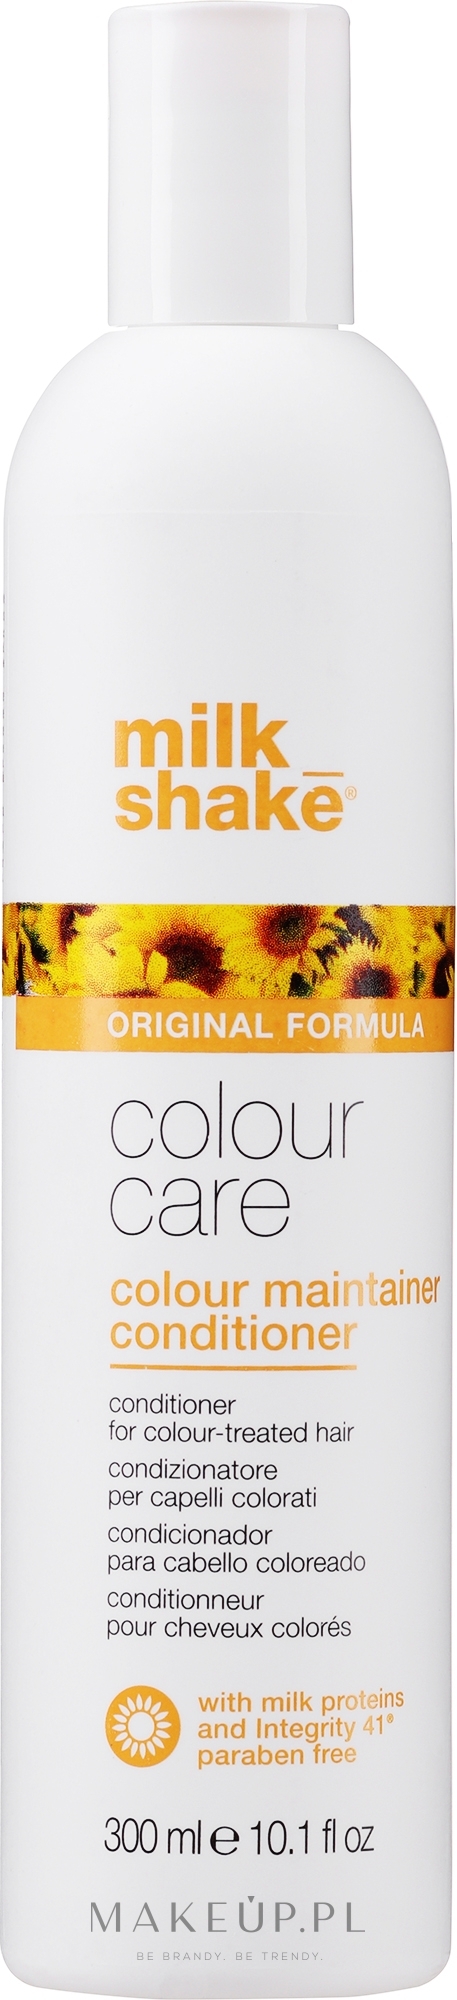 Bio odżywka chroniąca kolor do włosów farbowanych - Milk_Shake Color Care Maintainer Conditioner — Zdjęcie 300 ml